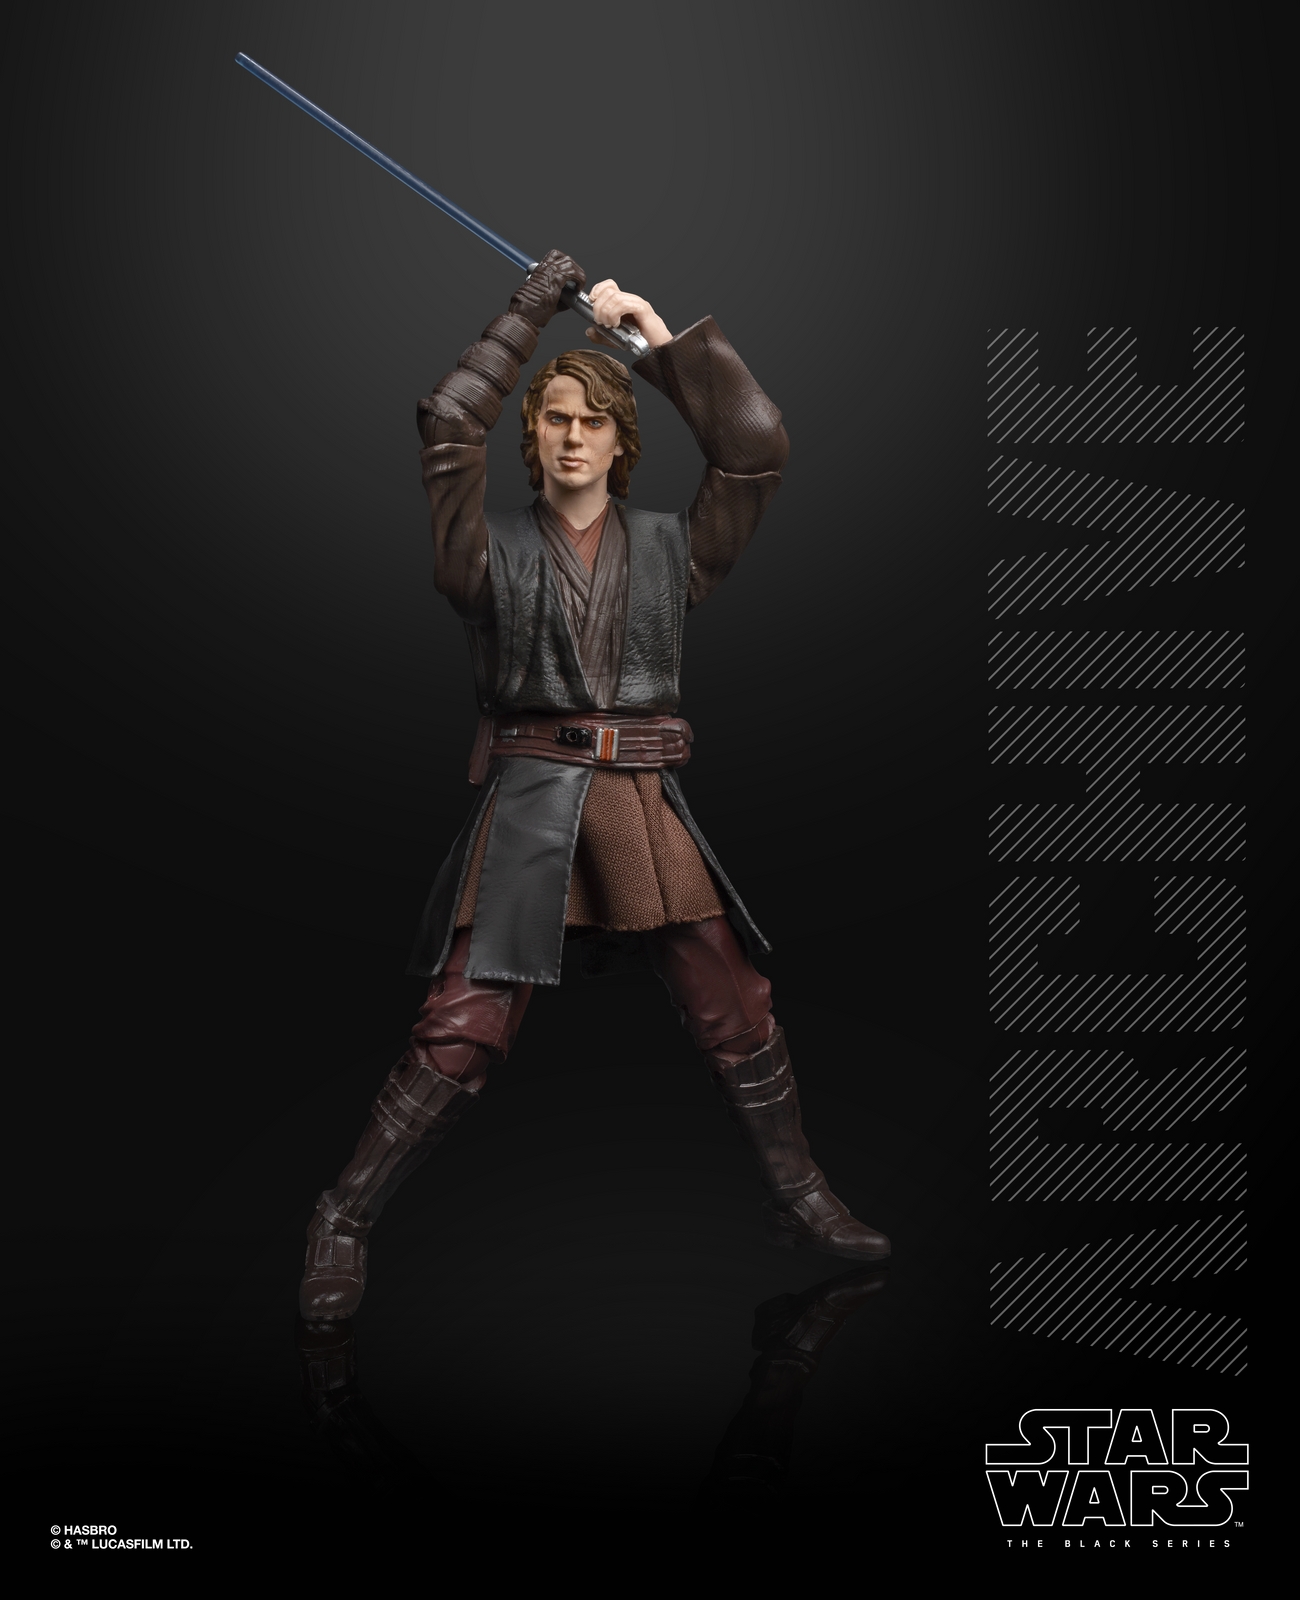 STAR WARS THE BLACK SERIES ARCHIVE 6-INCH Figure Assortment - Anakin Skywalker (oop 2).jpg